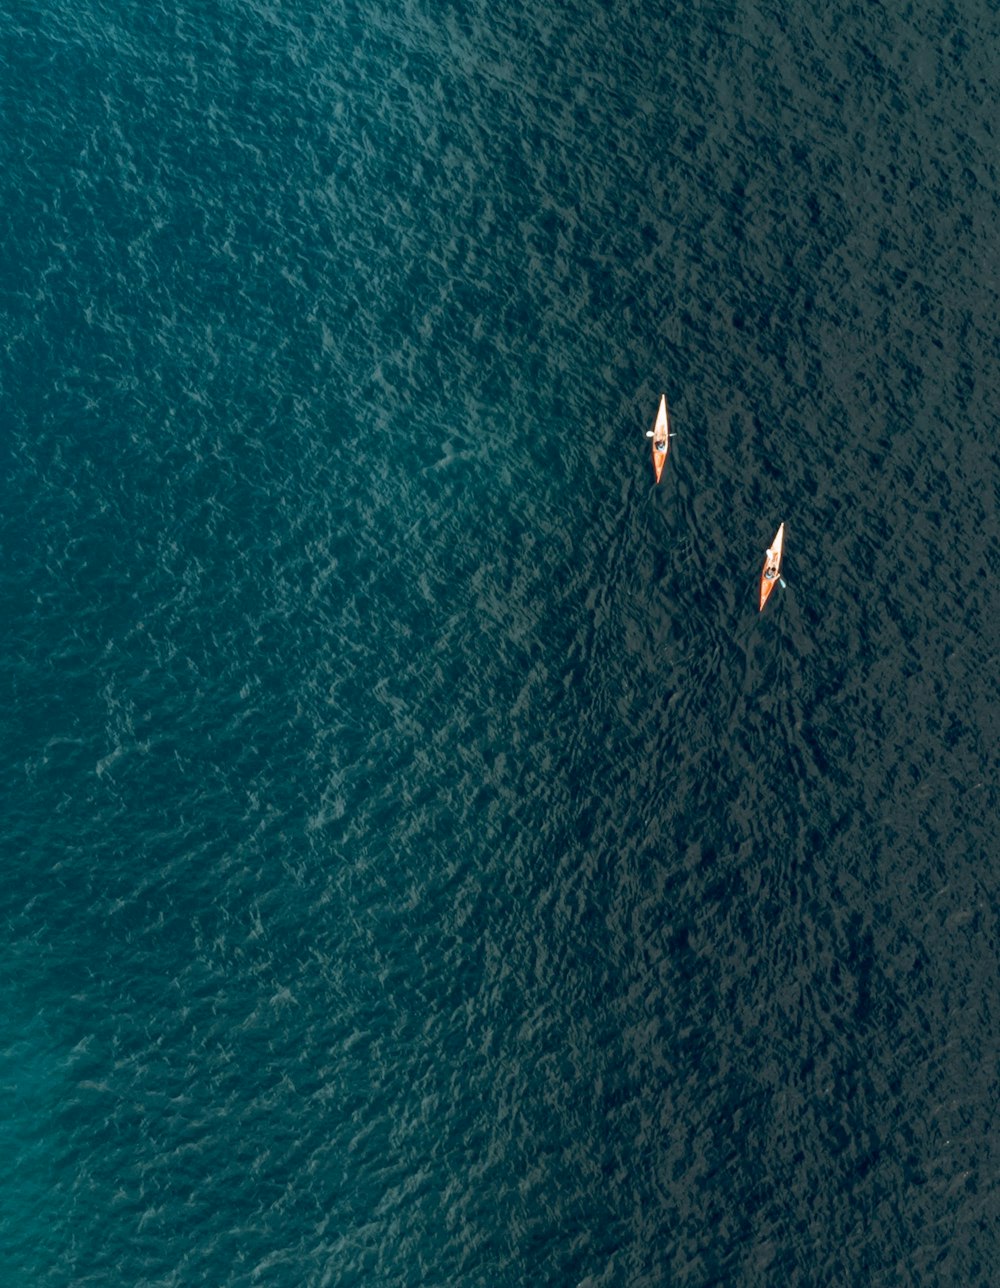 Dos pequeñas embarcaciones flotando sobre una gran masa de agua